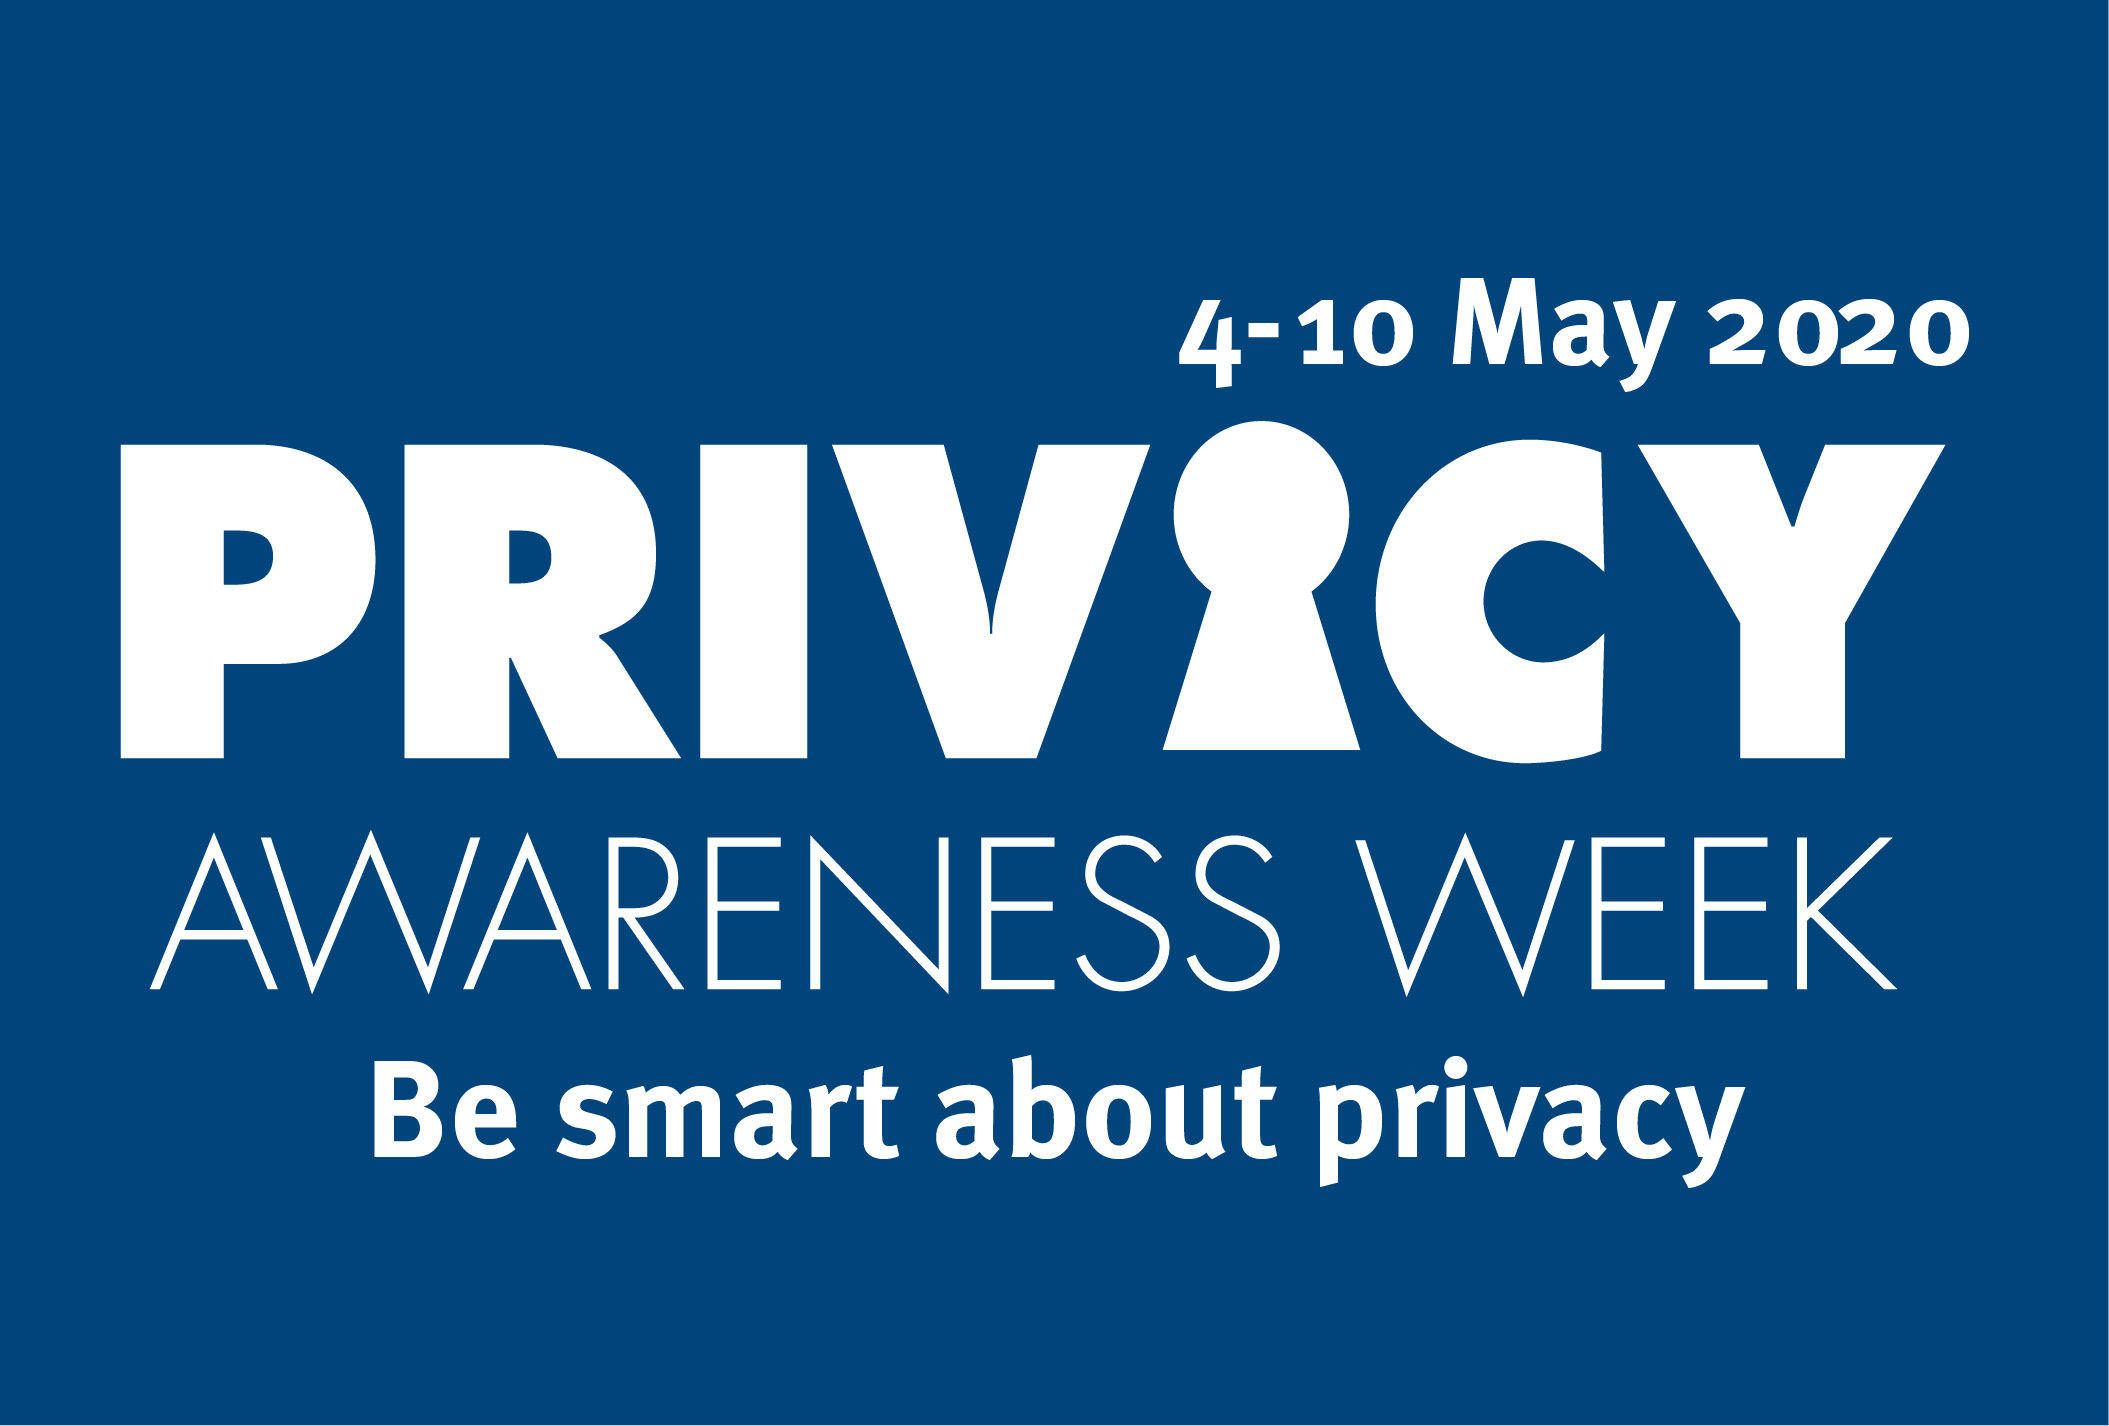 Privacy Week